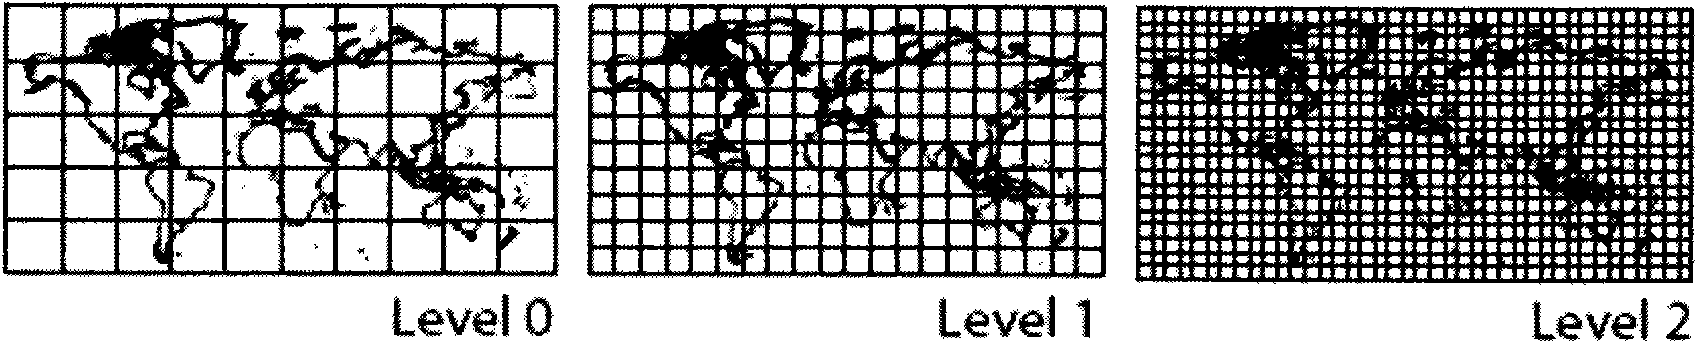 Data grading organization method based on longitude and latitude grid